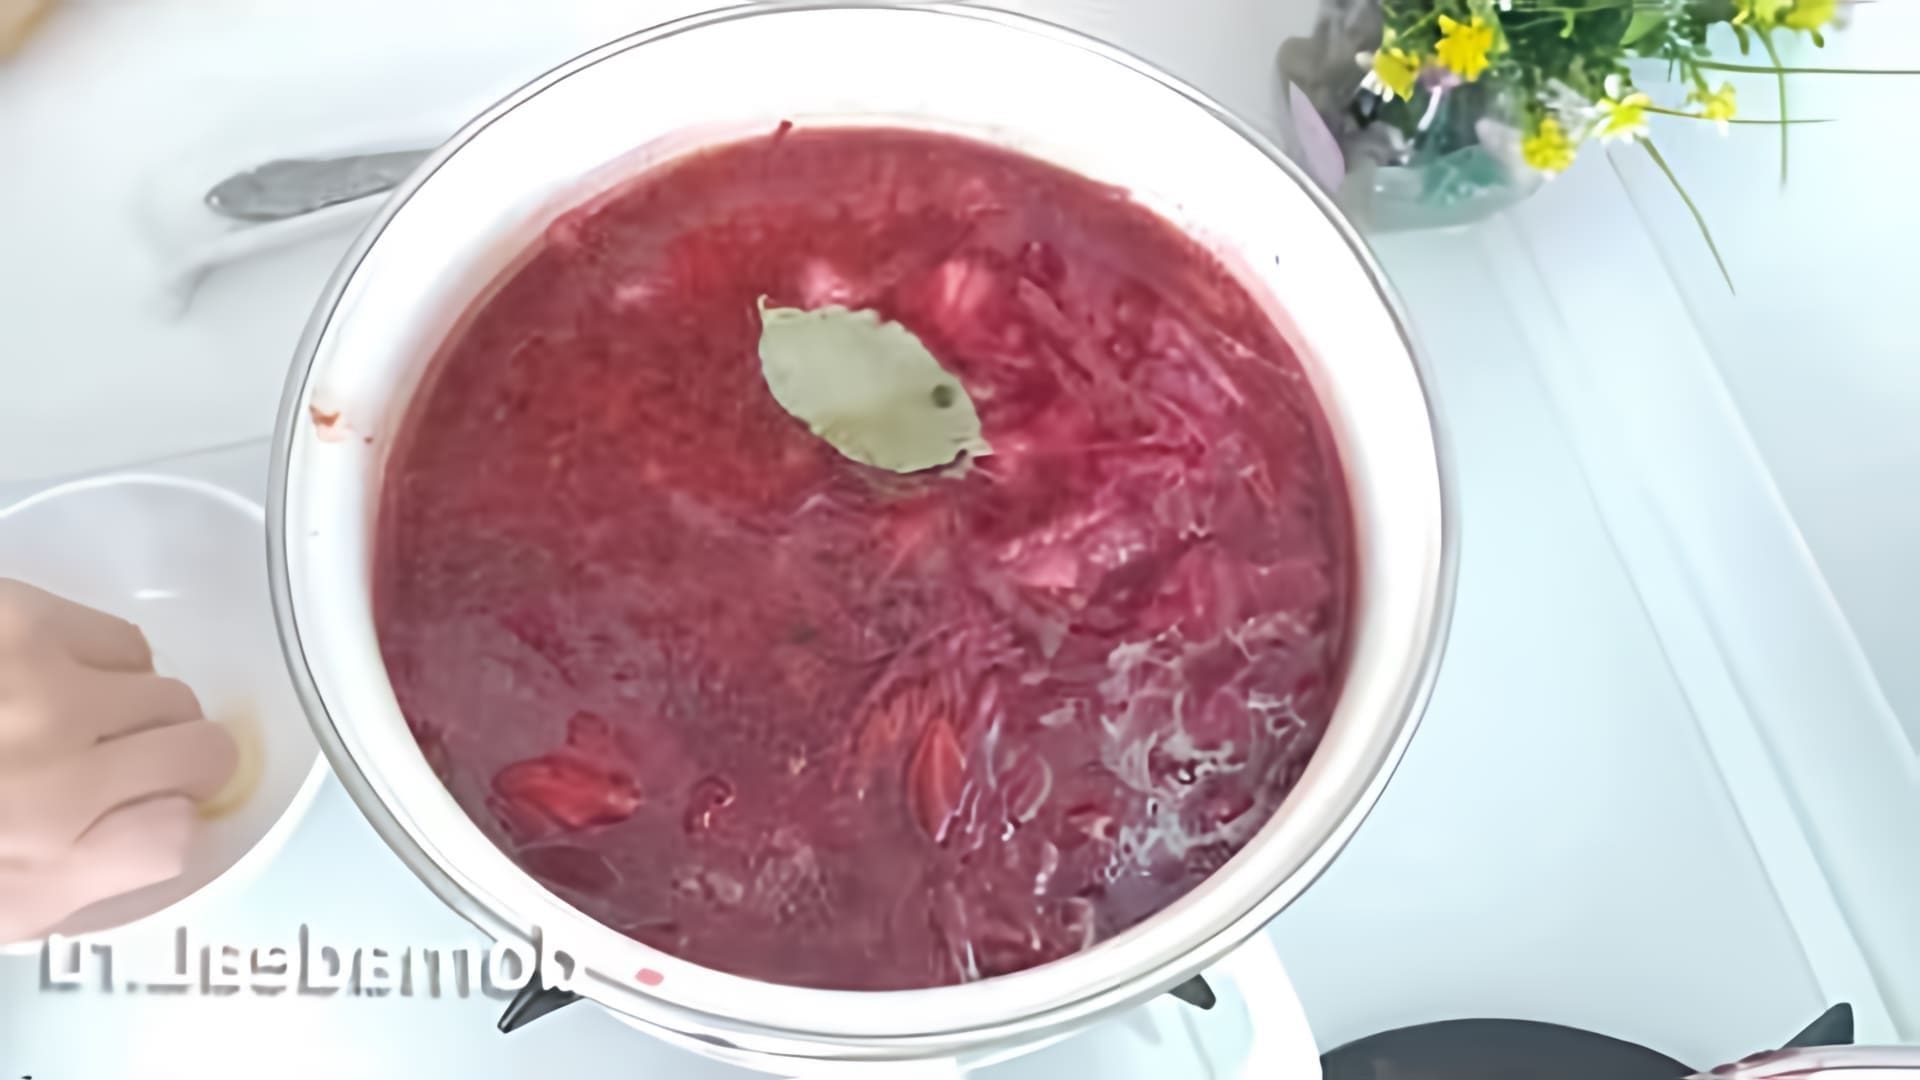 В этом видео демонстрируется рецепт приготовления красного борща